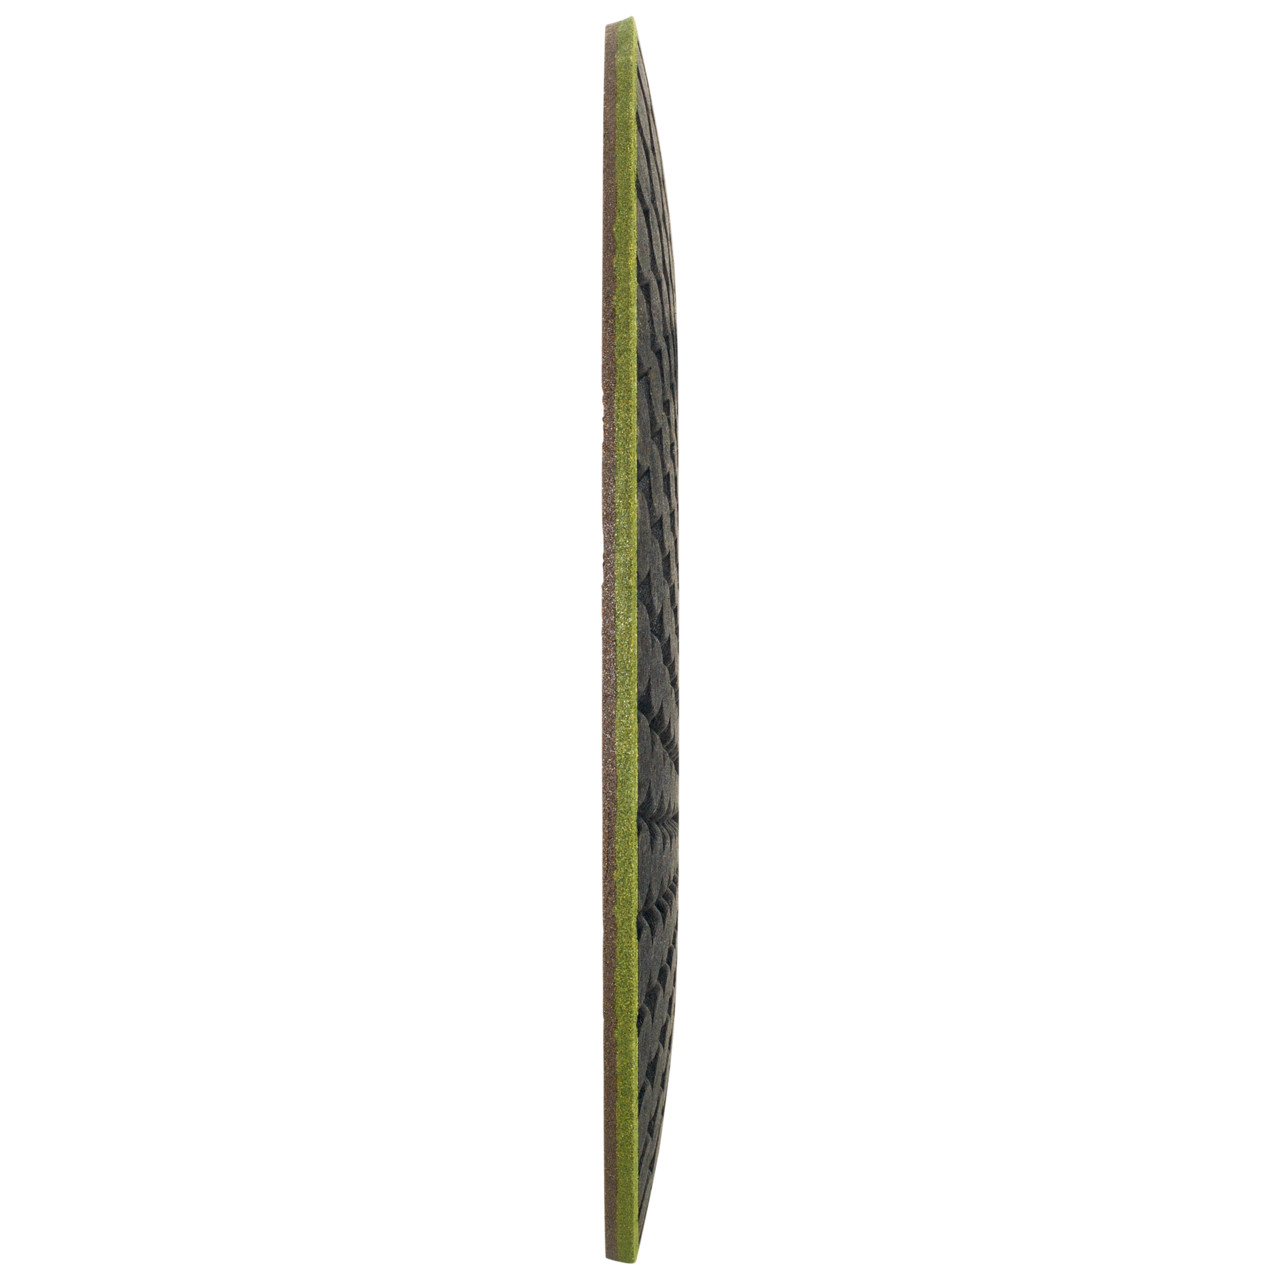 TYROLIT RONDELLER DxH 178x22,23 Per pietra, forma: 29RON (Rondeller®), Art. 908221